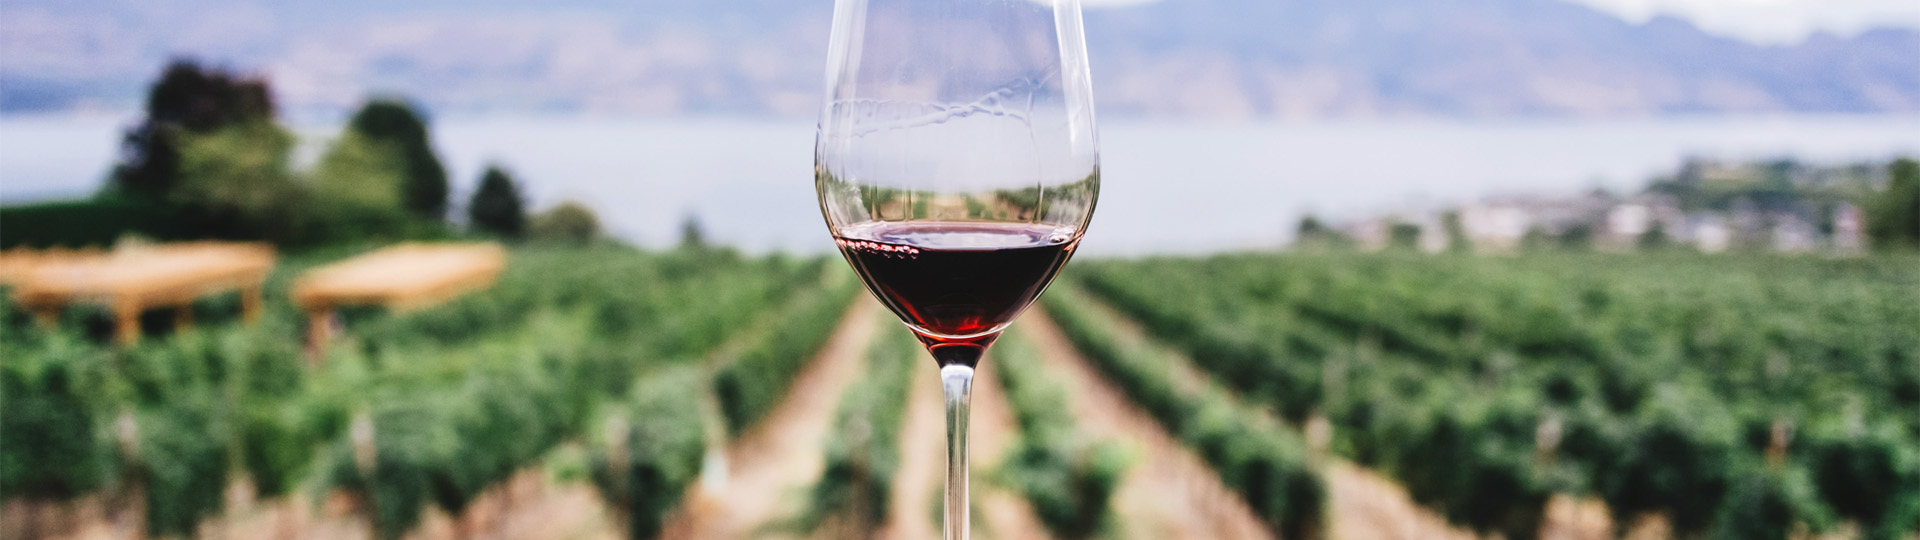 Glas mit Rotwein vor Weinbergen